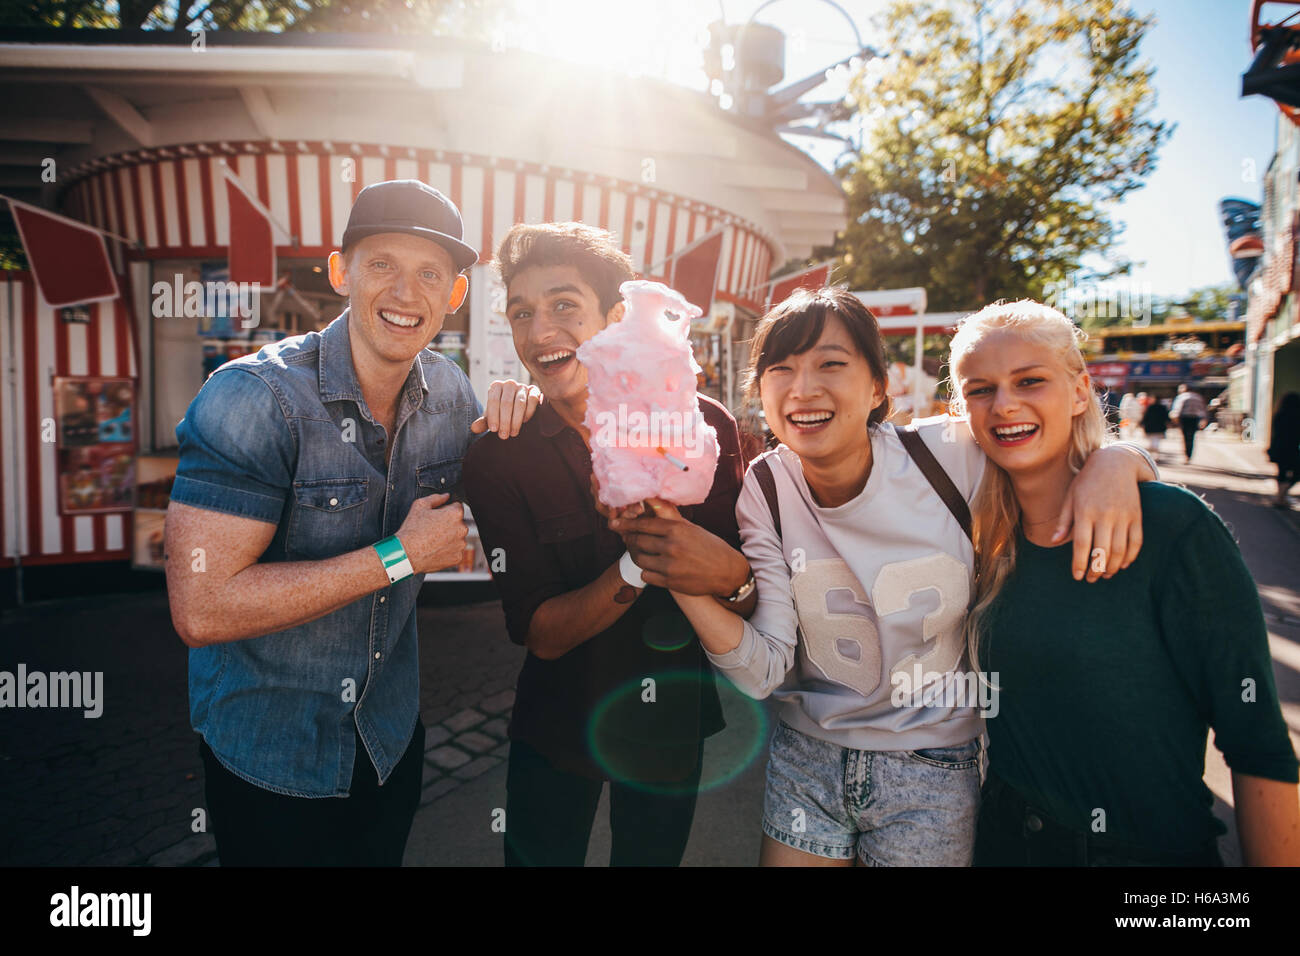 Gruppe von glücklichen jungen Freunden mit Zuckerwatte im Vergnügungspark. Junge Männer und Frauen halten Baumwolle Zuckerwatte und lächelnd. Stockfoto